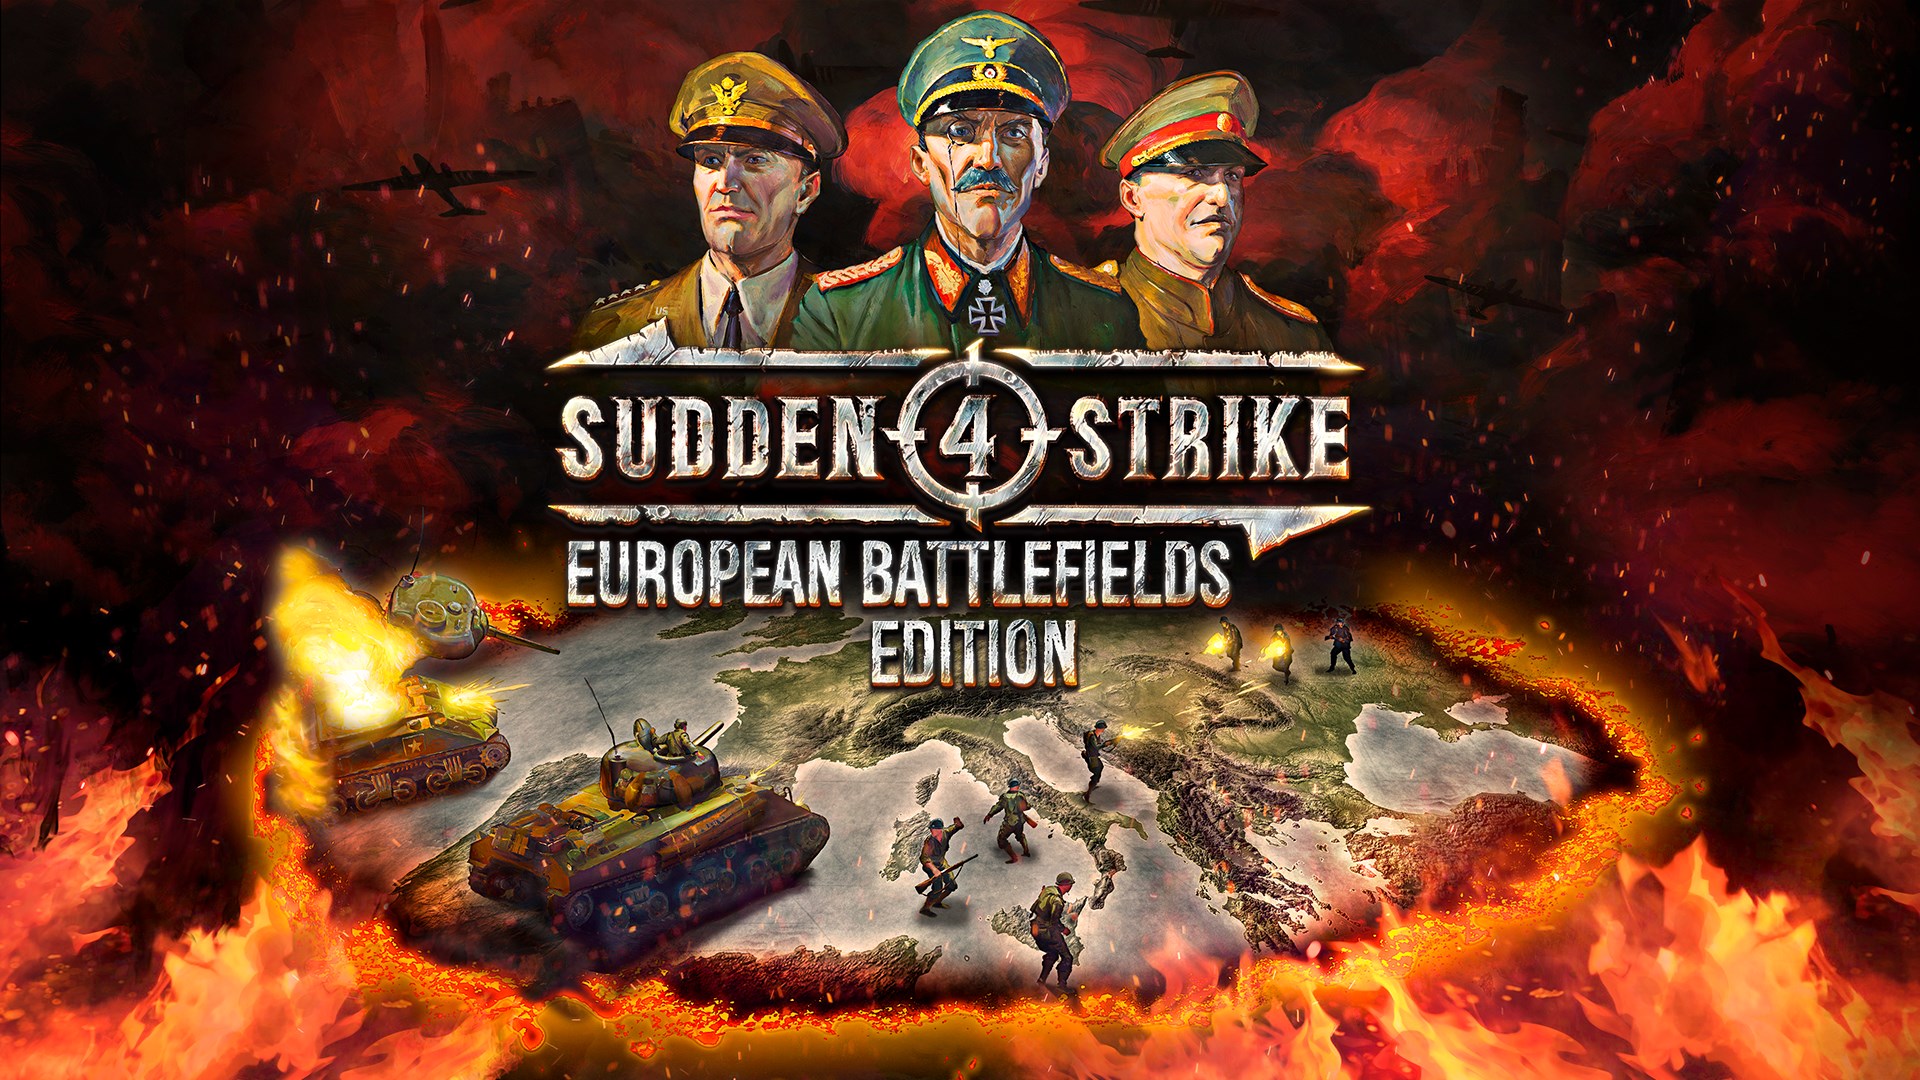 Sudden Strike 4 - European Battlefields Edition